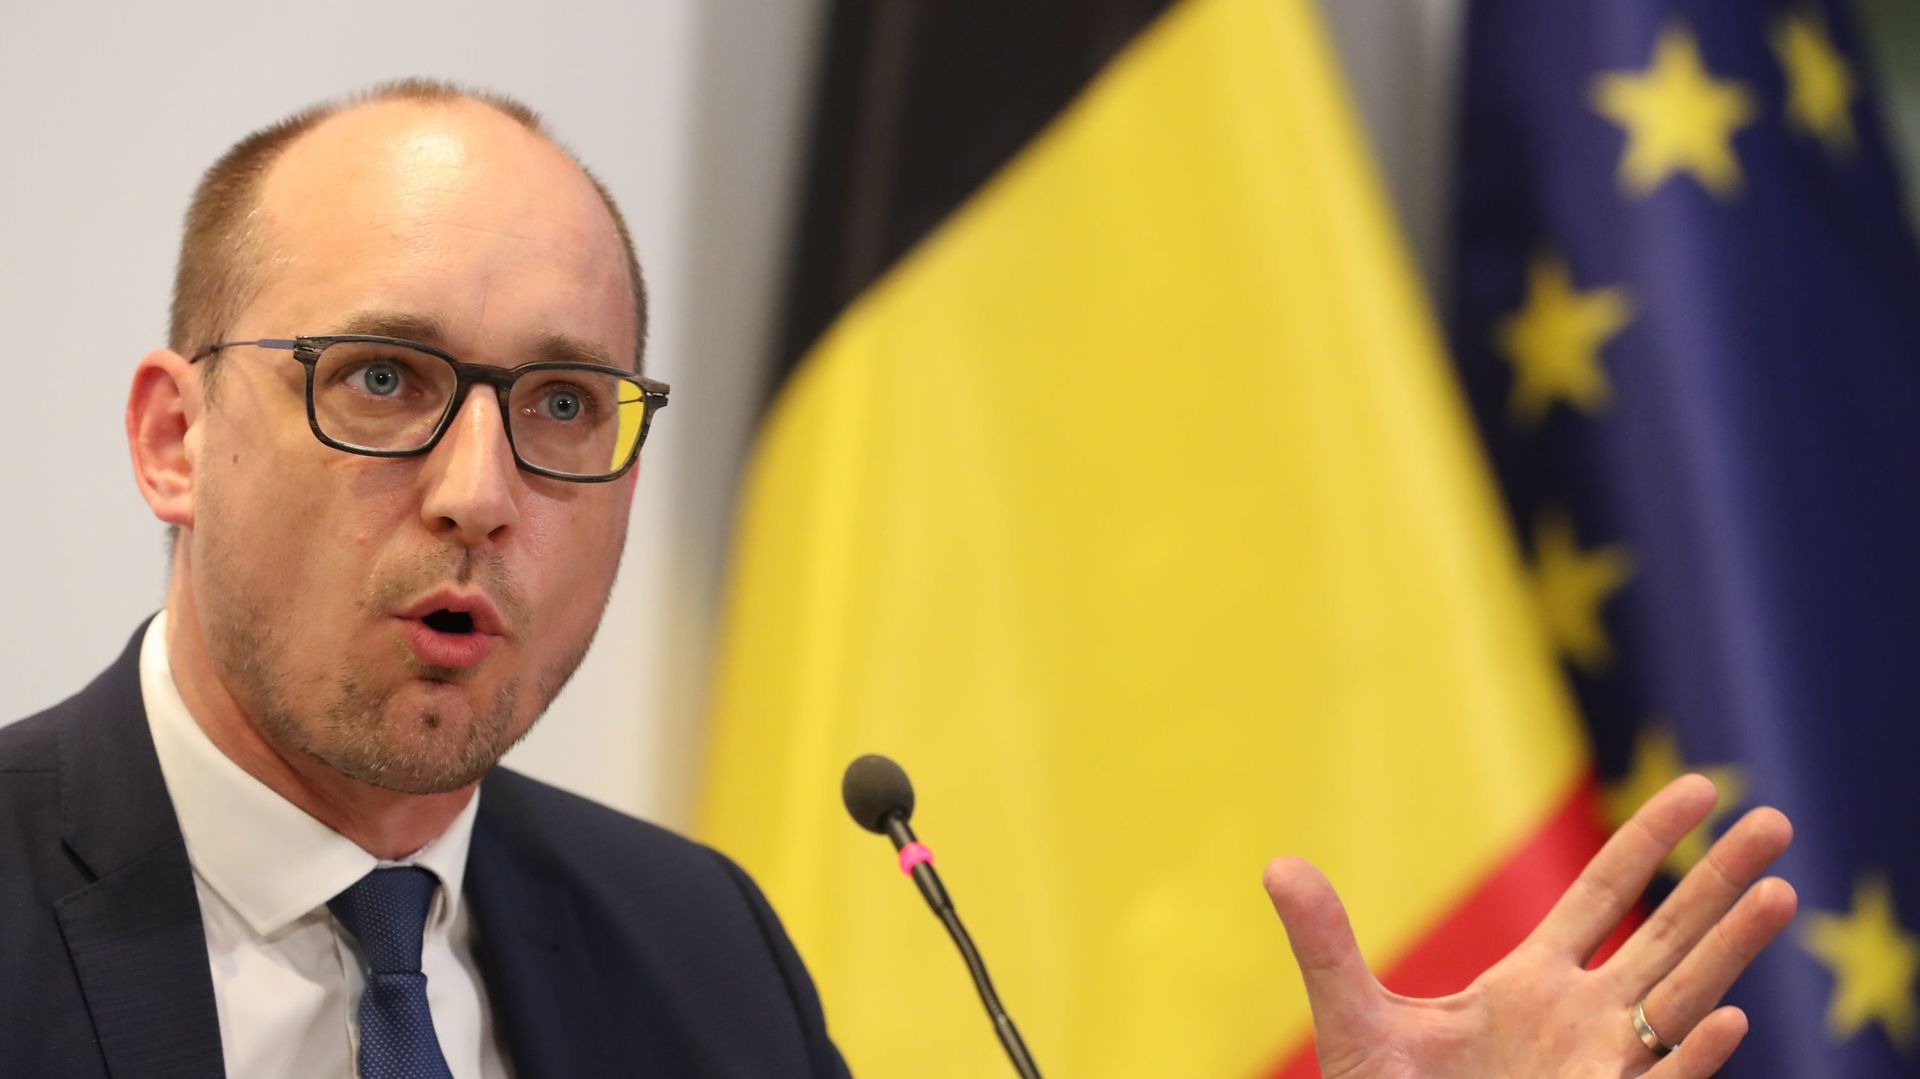 Plan de relance de l’UE : la Belgique remet son programme de stabilité à la Commission